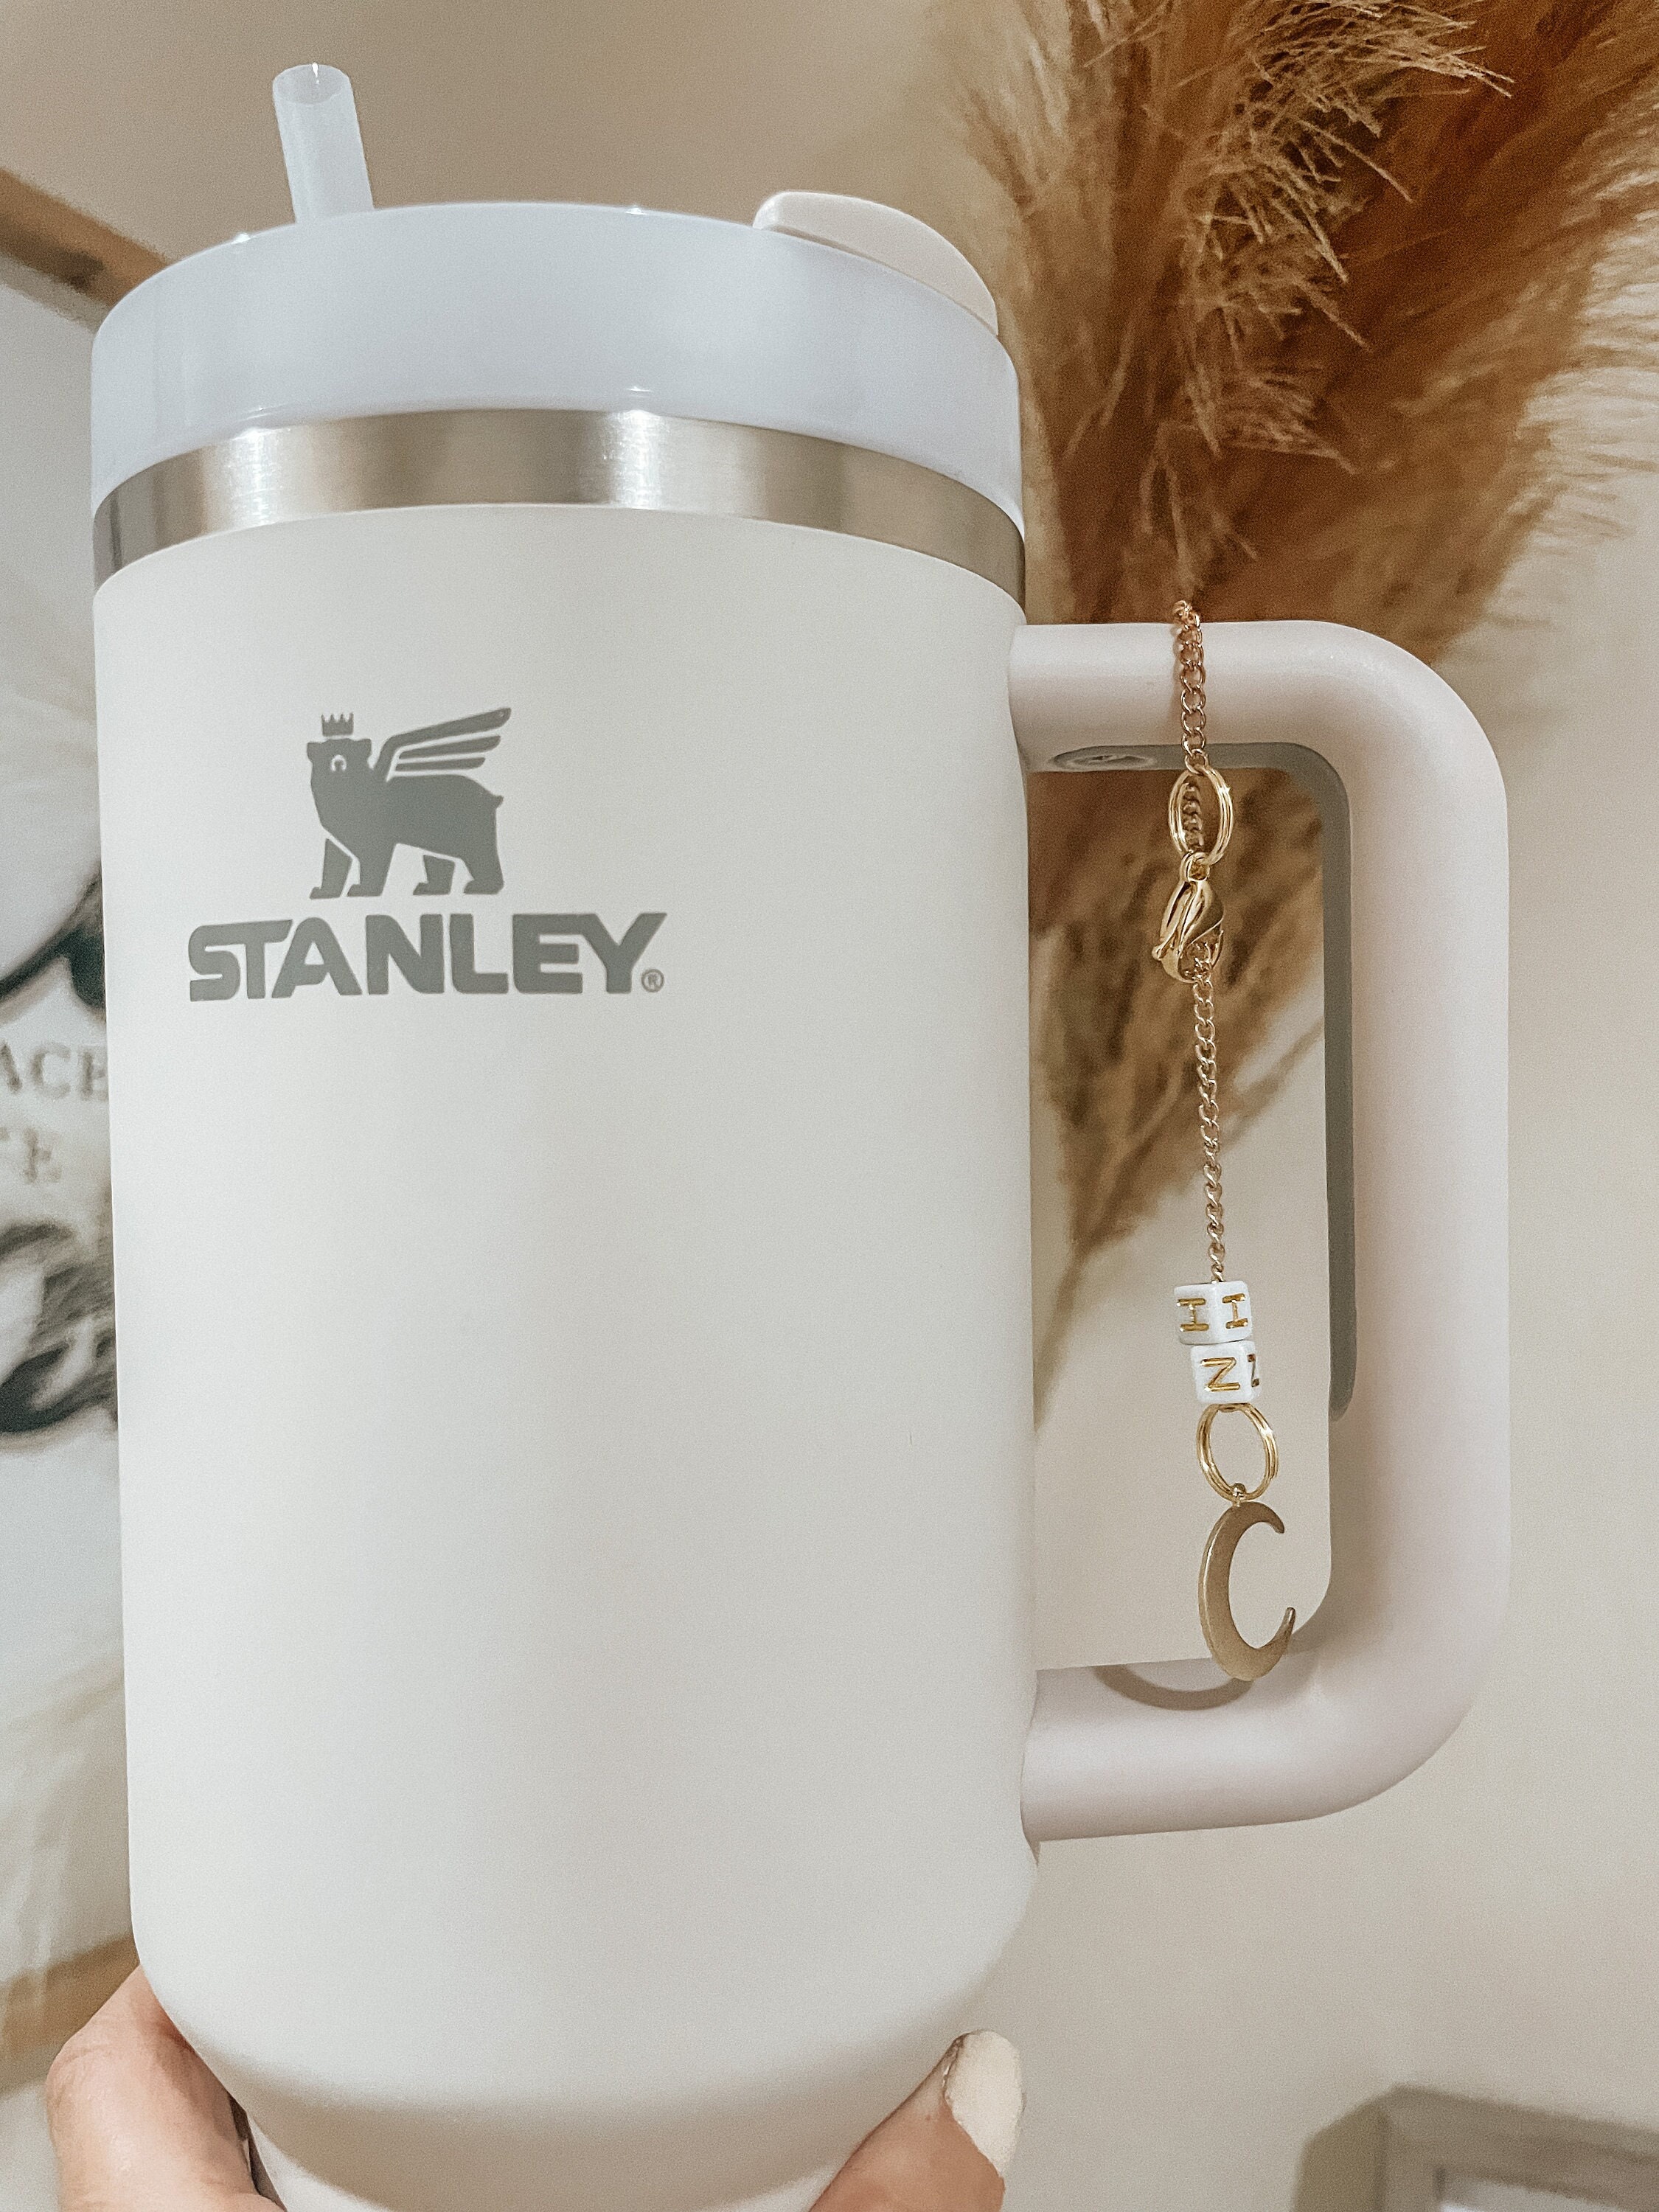 Stanley Cup Handler Salary, Thermal Cup Stanley Beer